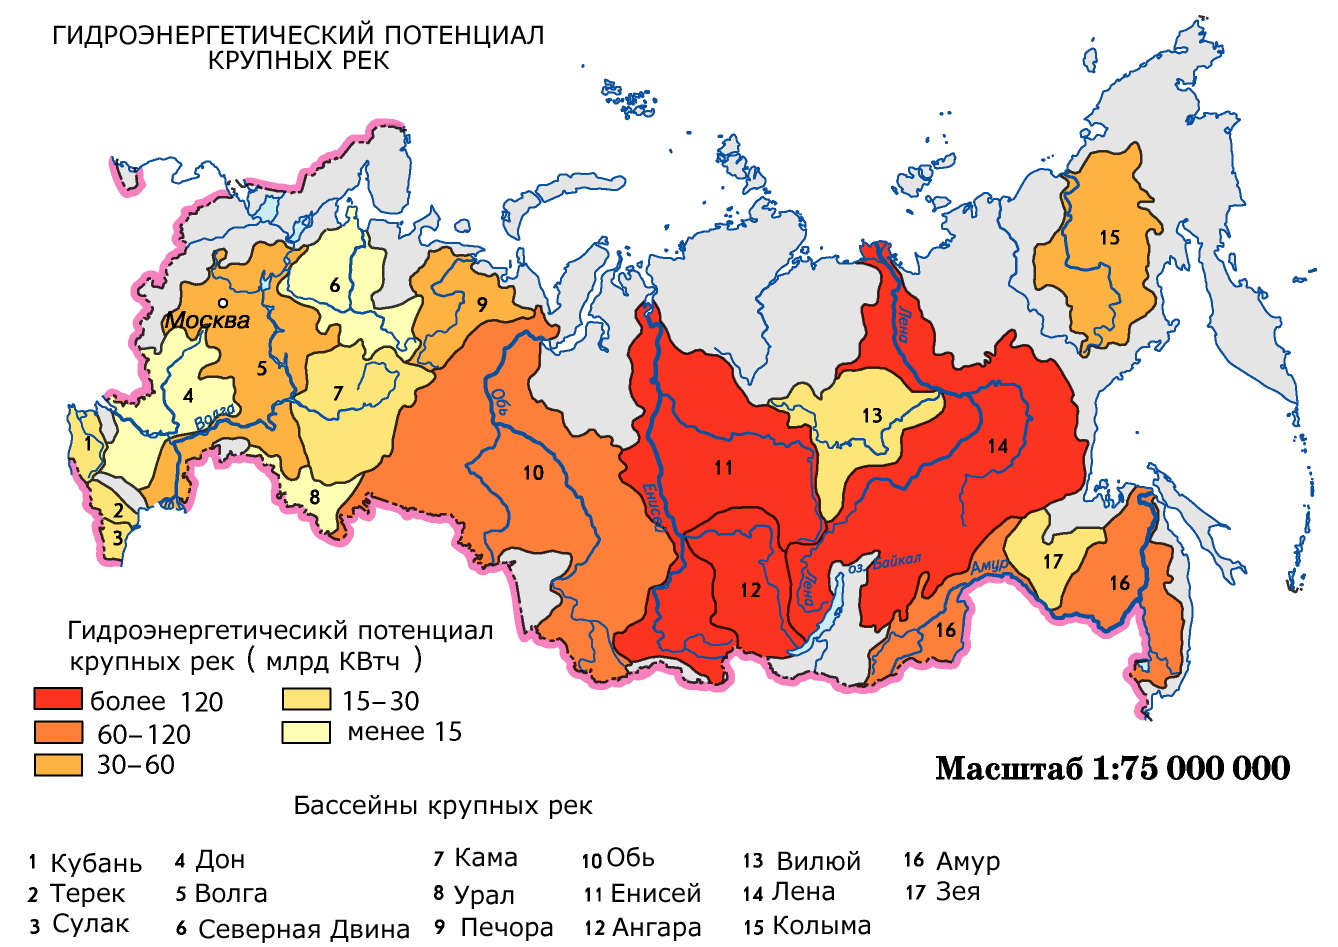 8 класс оценивание обеспеченностводными ресурсами крупных регионов россии